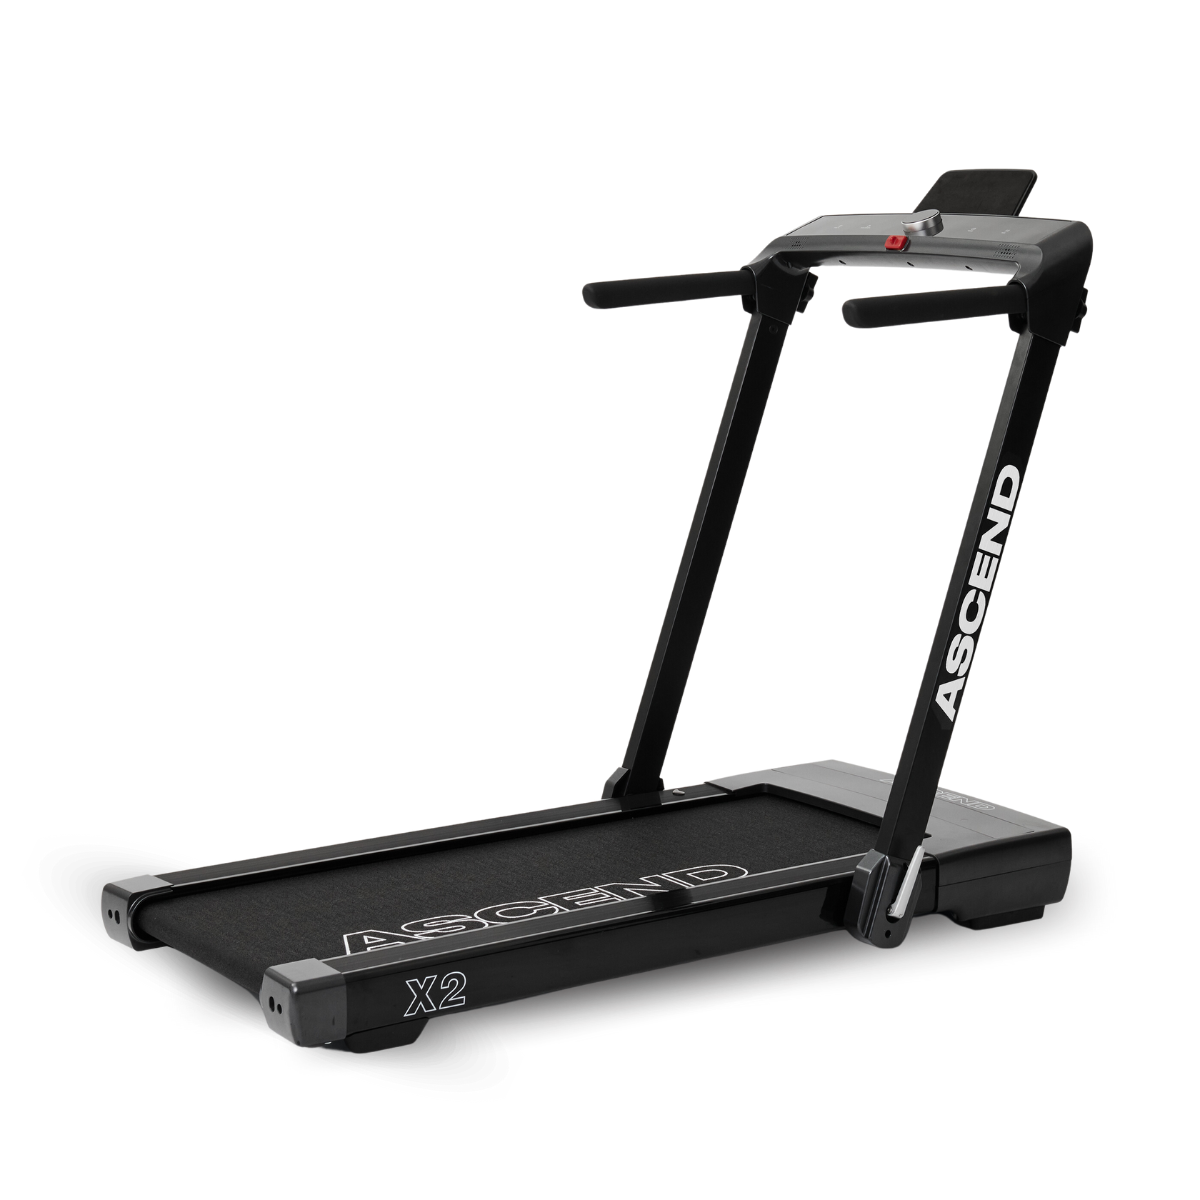 Ascend X2 | Advanced 2 in 1 Treadmill